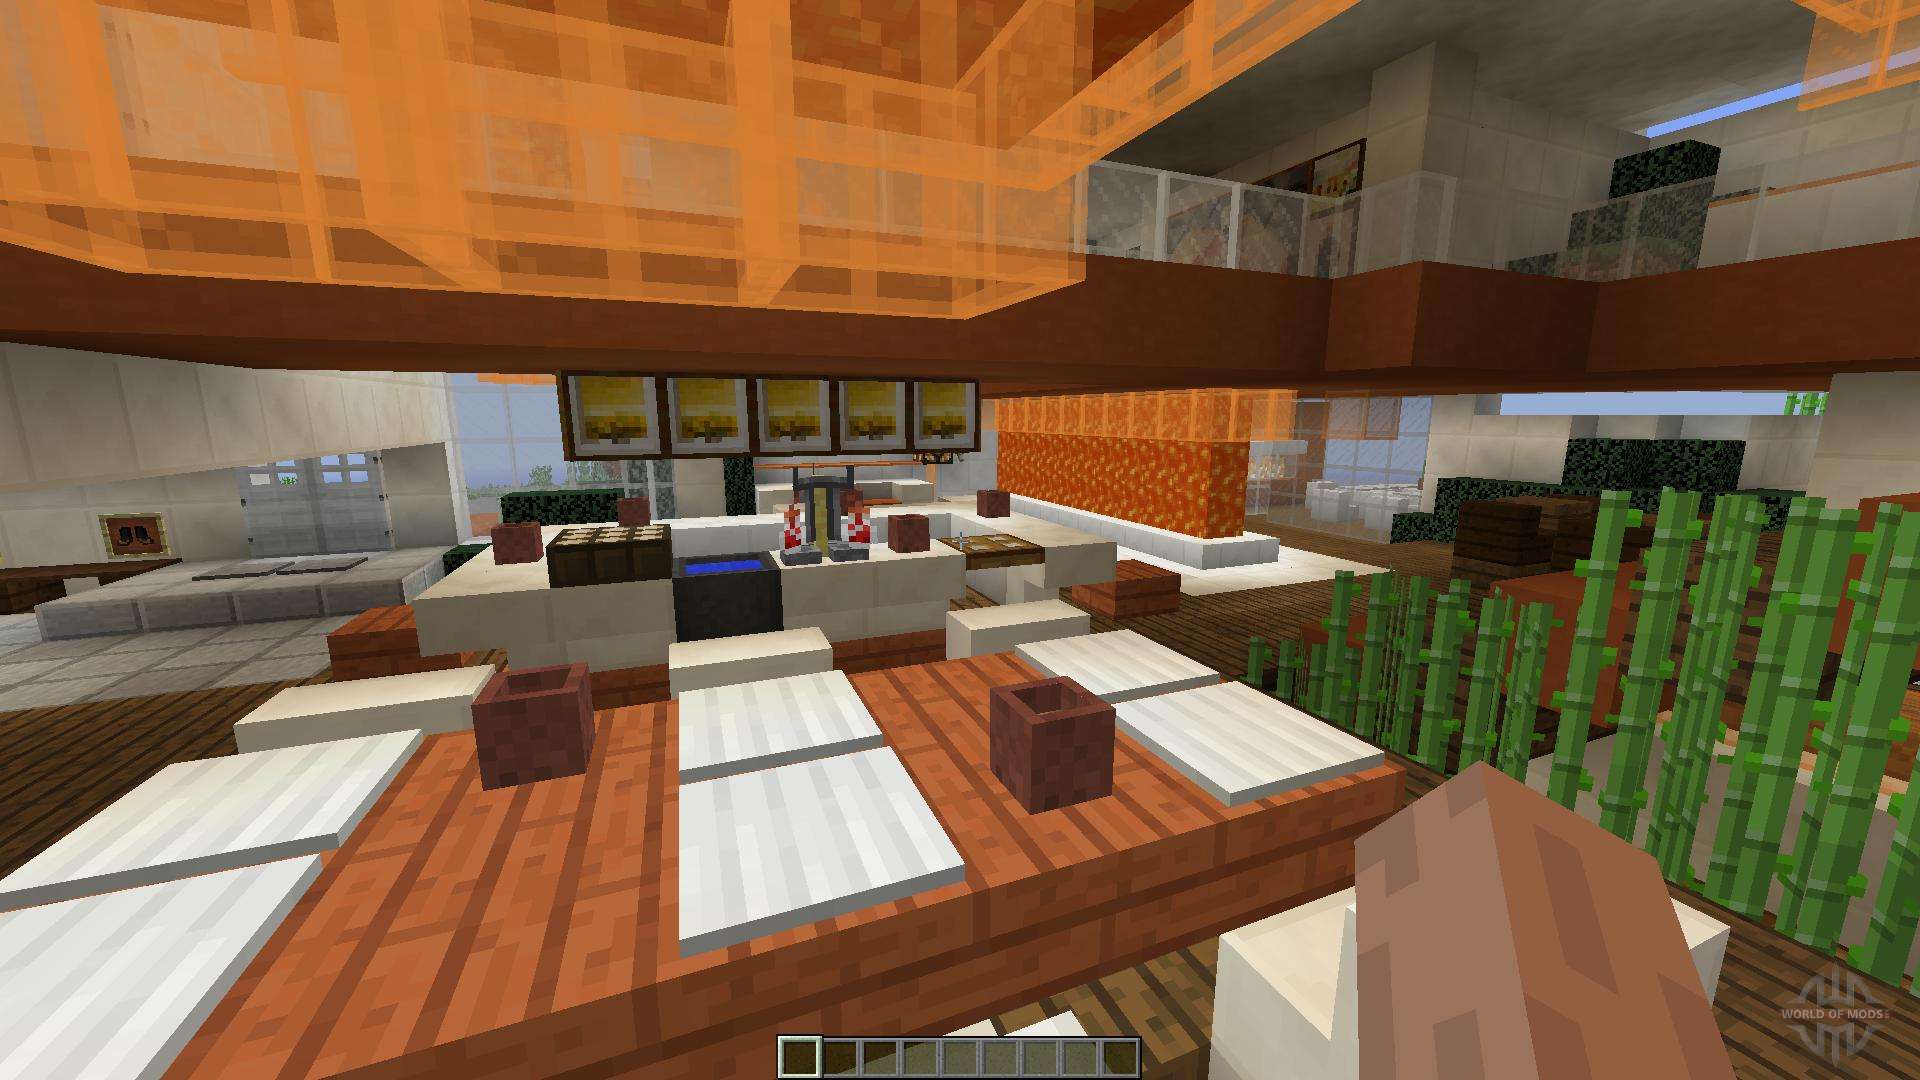 Modern Tony Stark Based Cliff-side Mansion für Minecraft